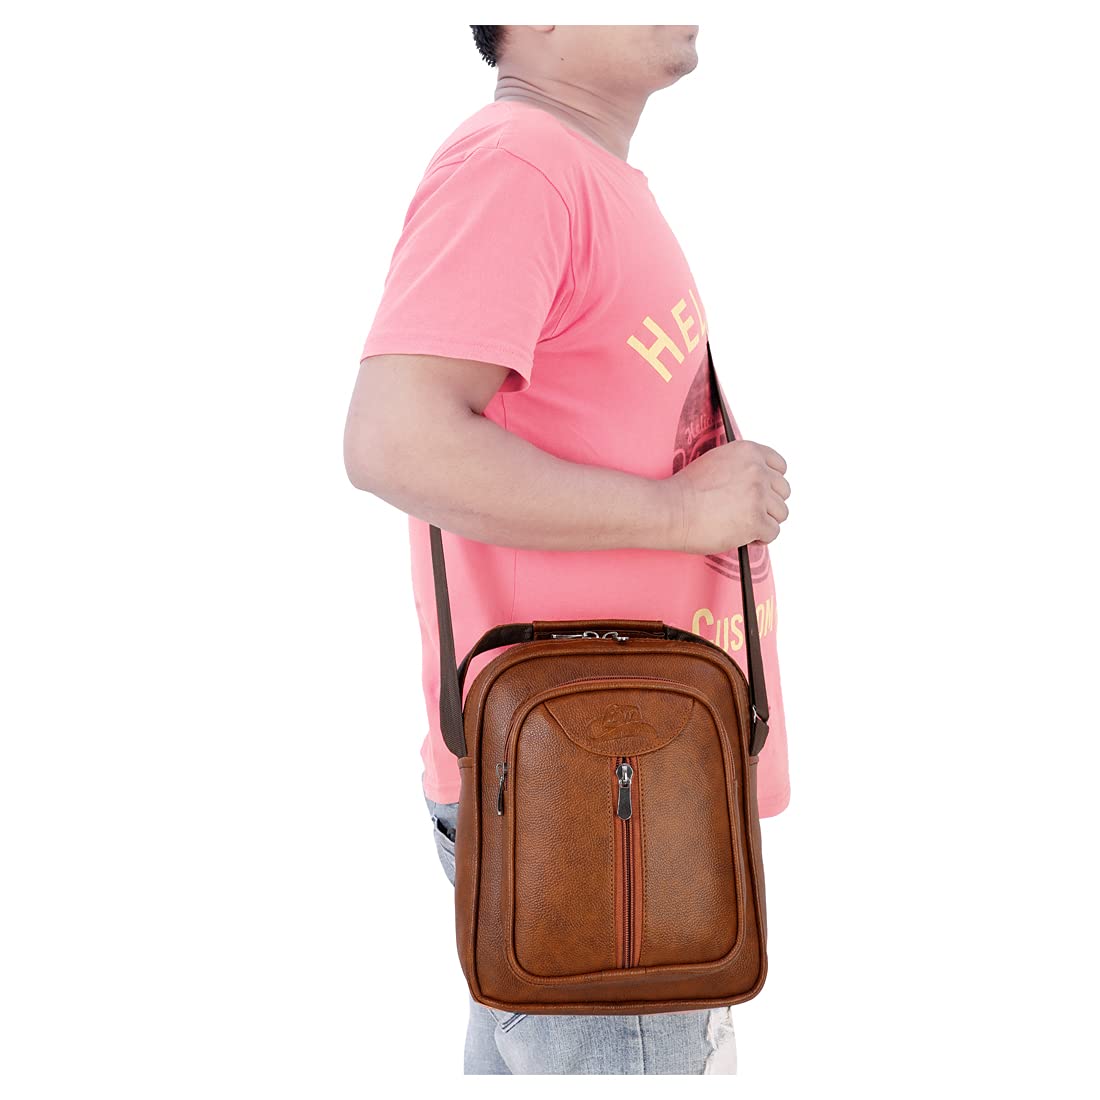 Leather World Vegan Leather 5.6 Liter Sling Cross Body Travel Office Business Messenger Bag for Men Women